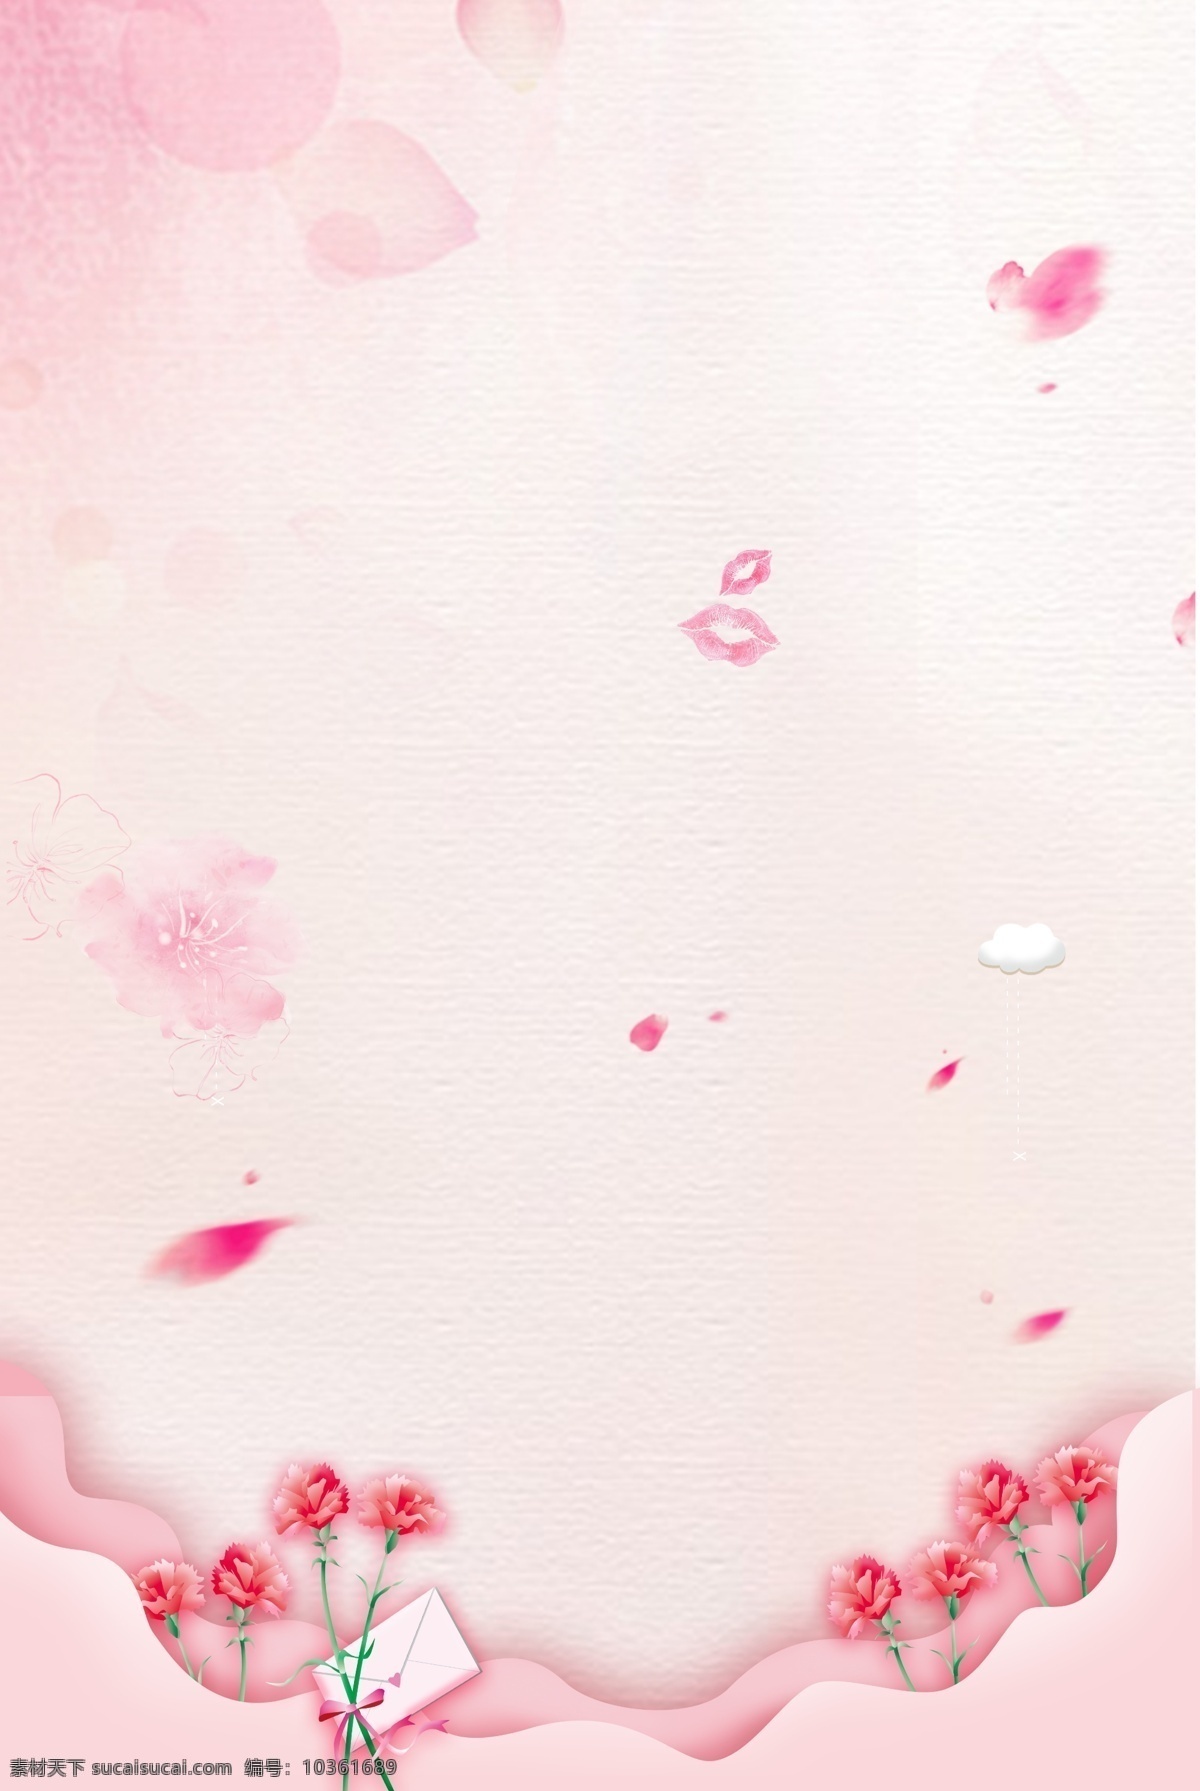 粉色 温馨 剪纸 母亲节 海报 背景 文艺 清新 卡通 手绘 质感 纹理 康乃馨